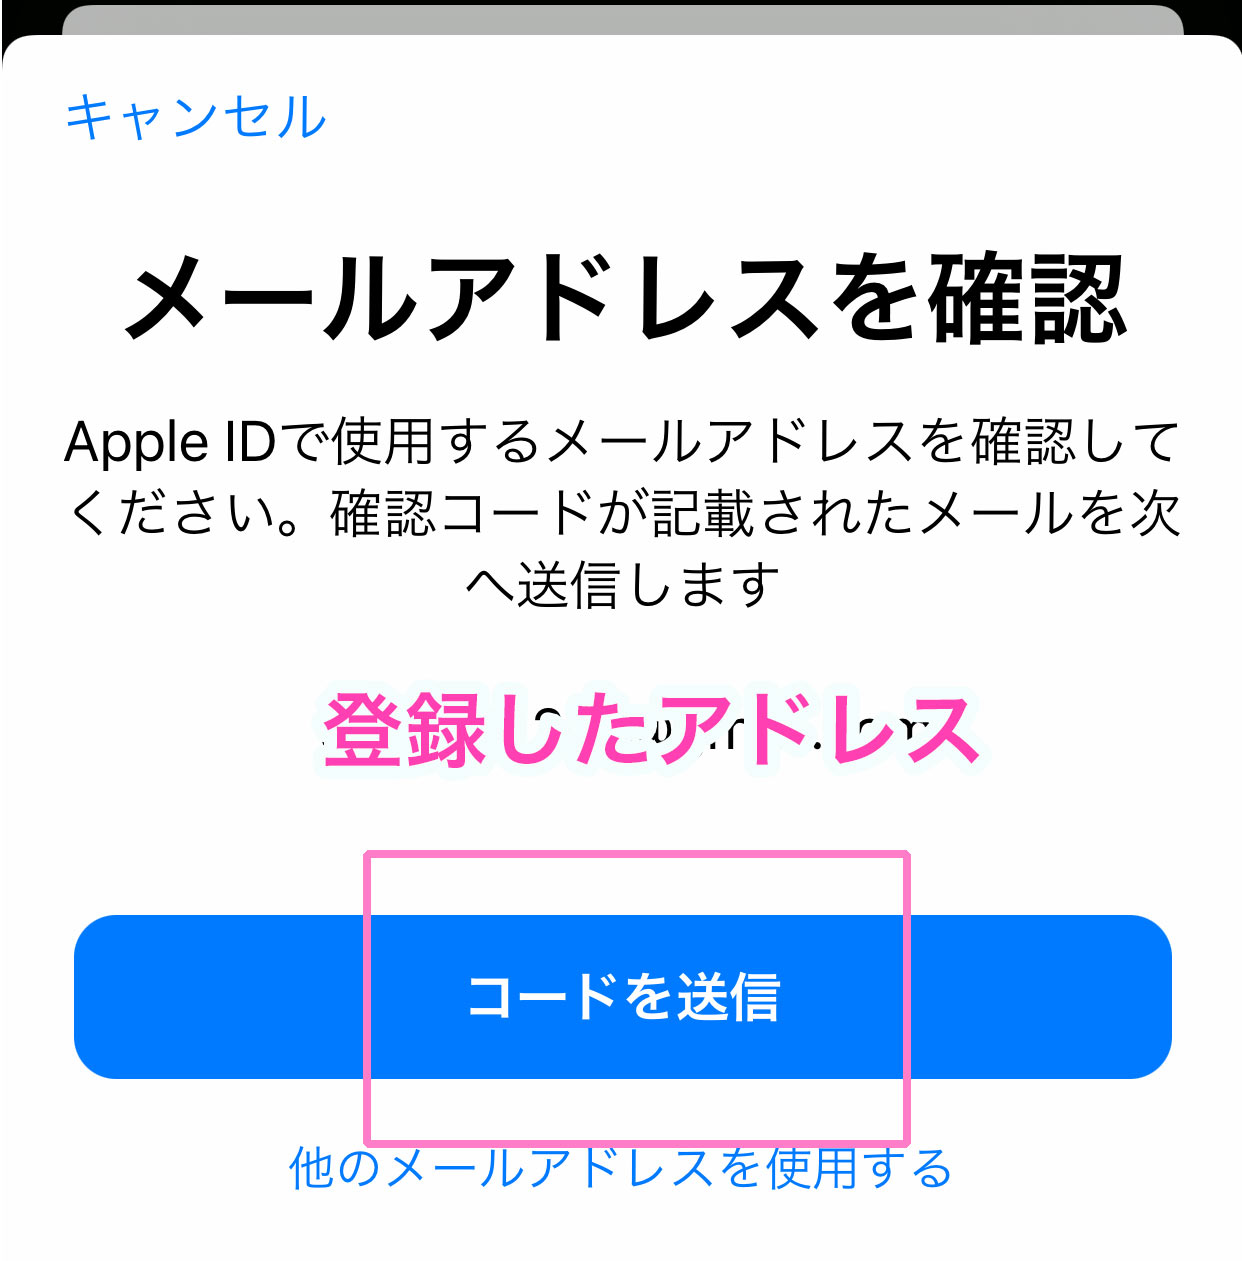 Apple Id 通知用メールアドレスと同じにすることはできません Apple Id 通知用メールアドレスと同じにすることはできません